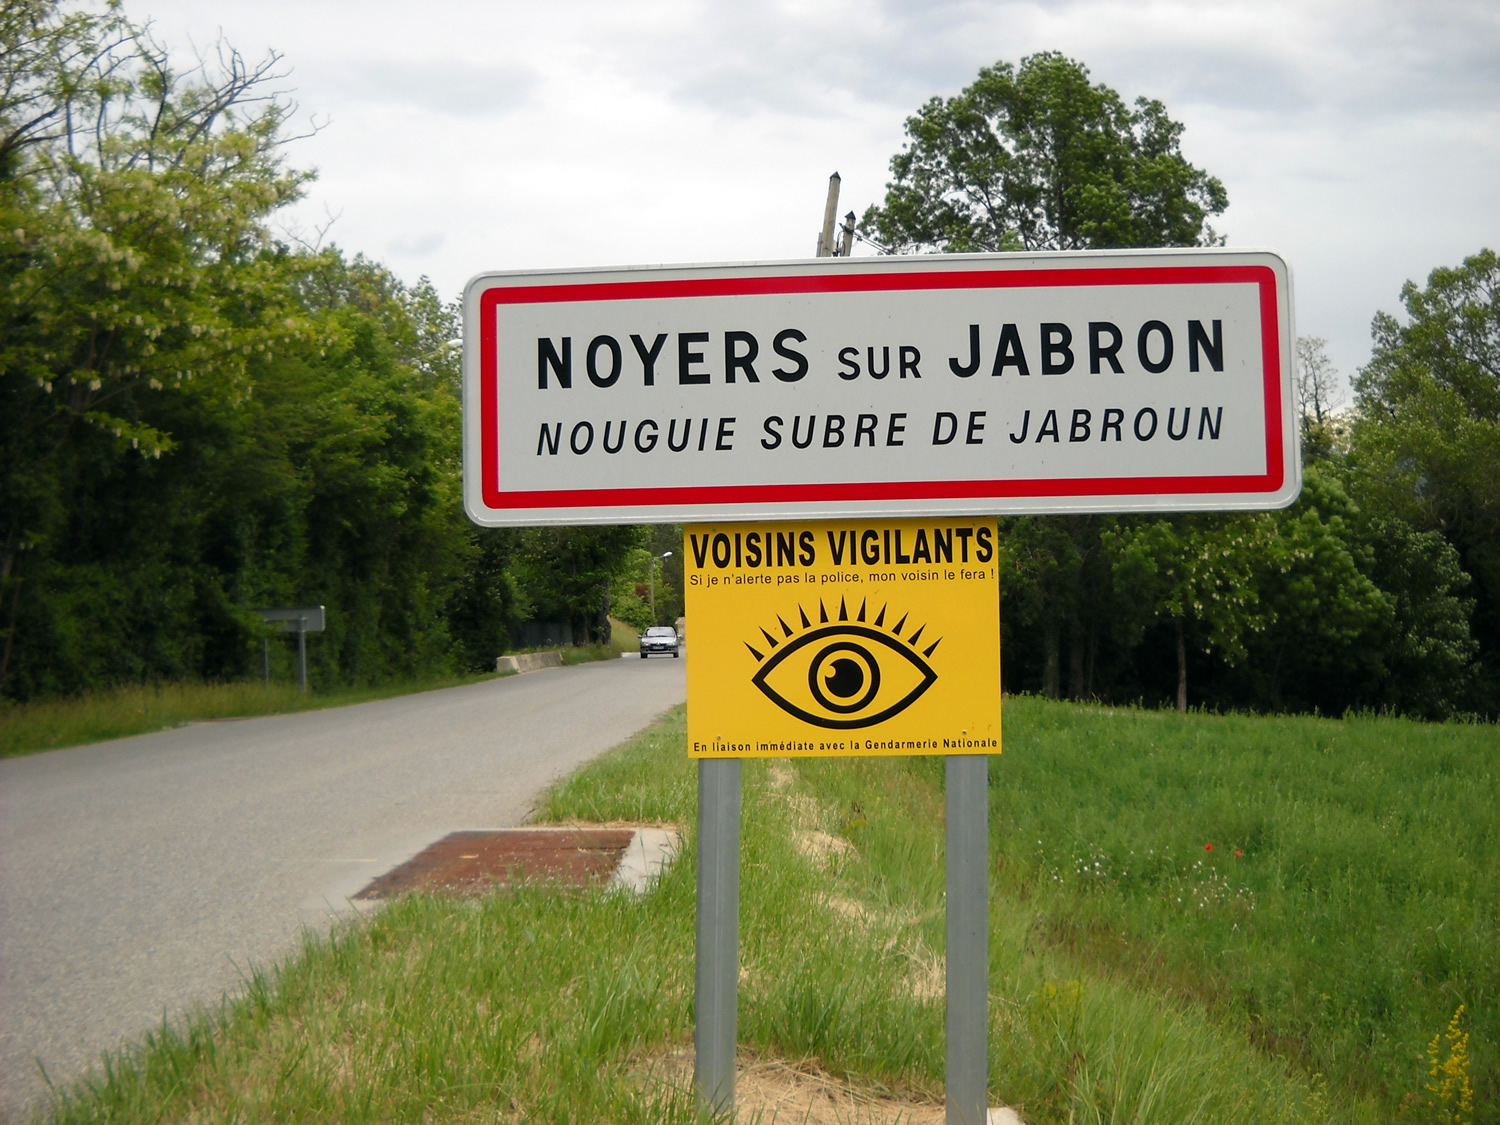 Un protocole officiel encourage la vigilance citoyenne des voisins à Noyers sur Jabron !